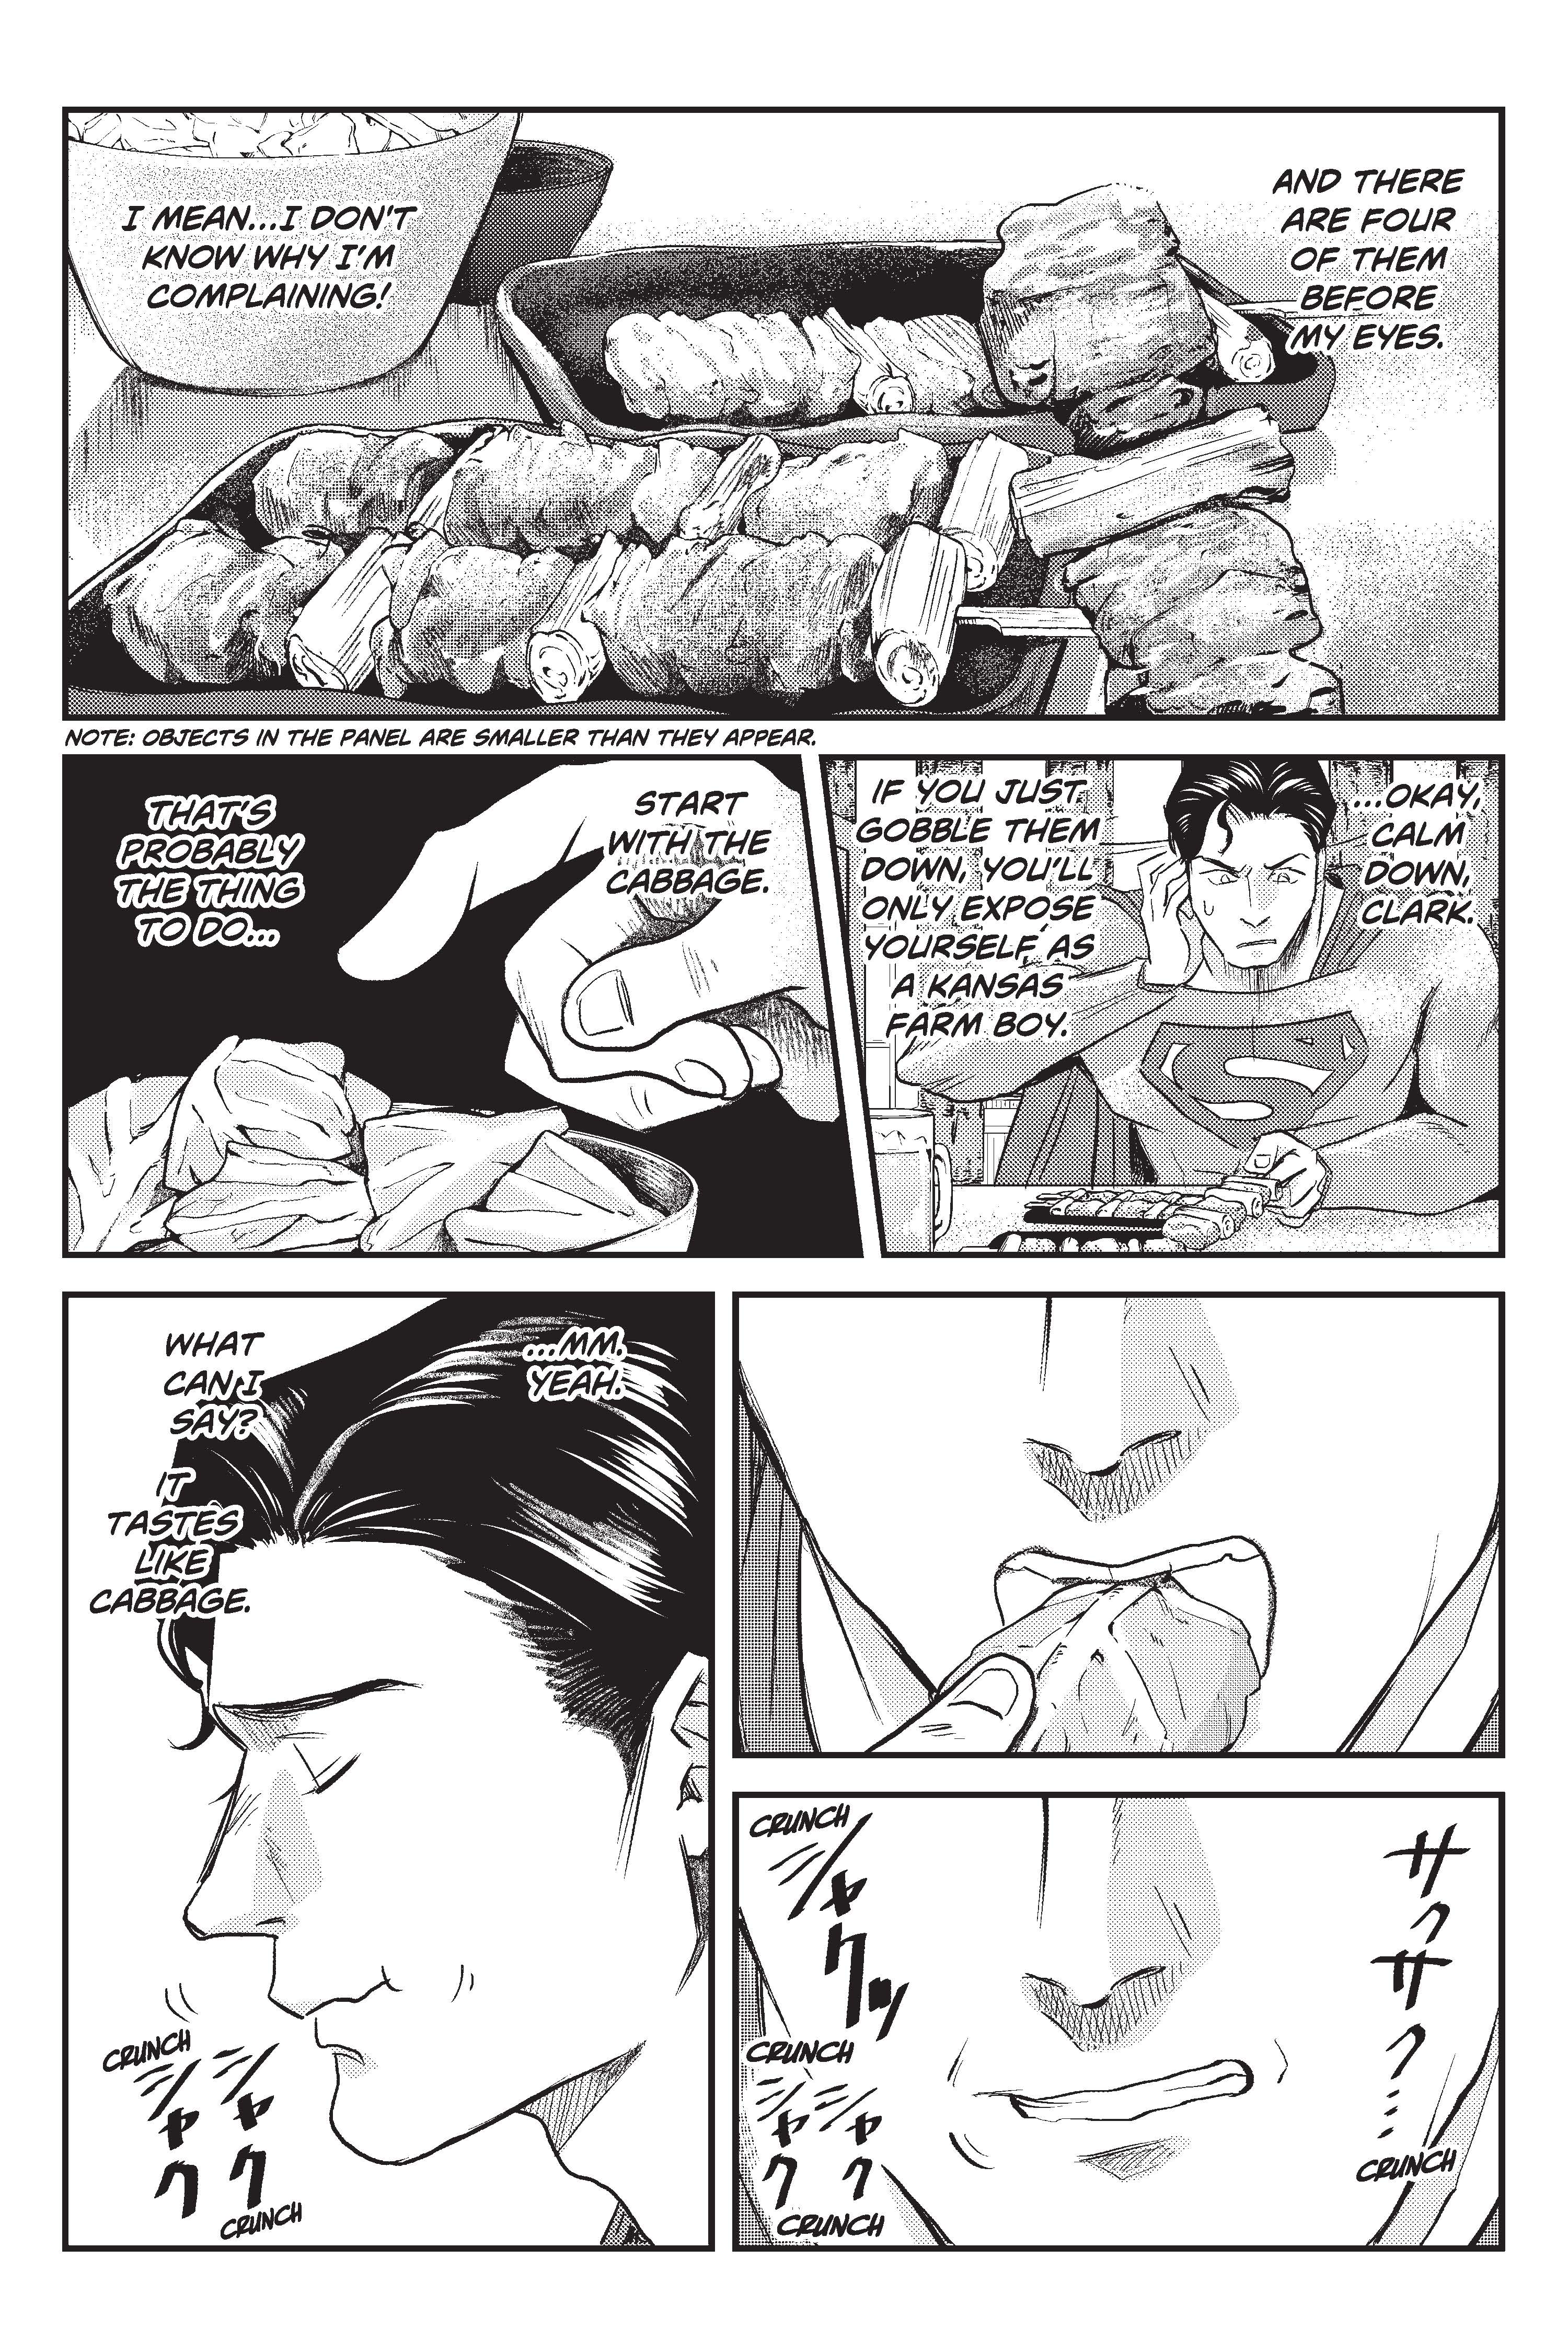 Superman vs Meshi